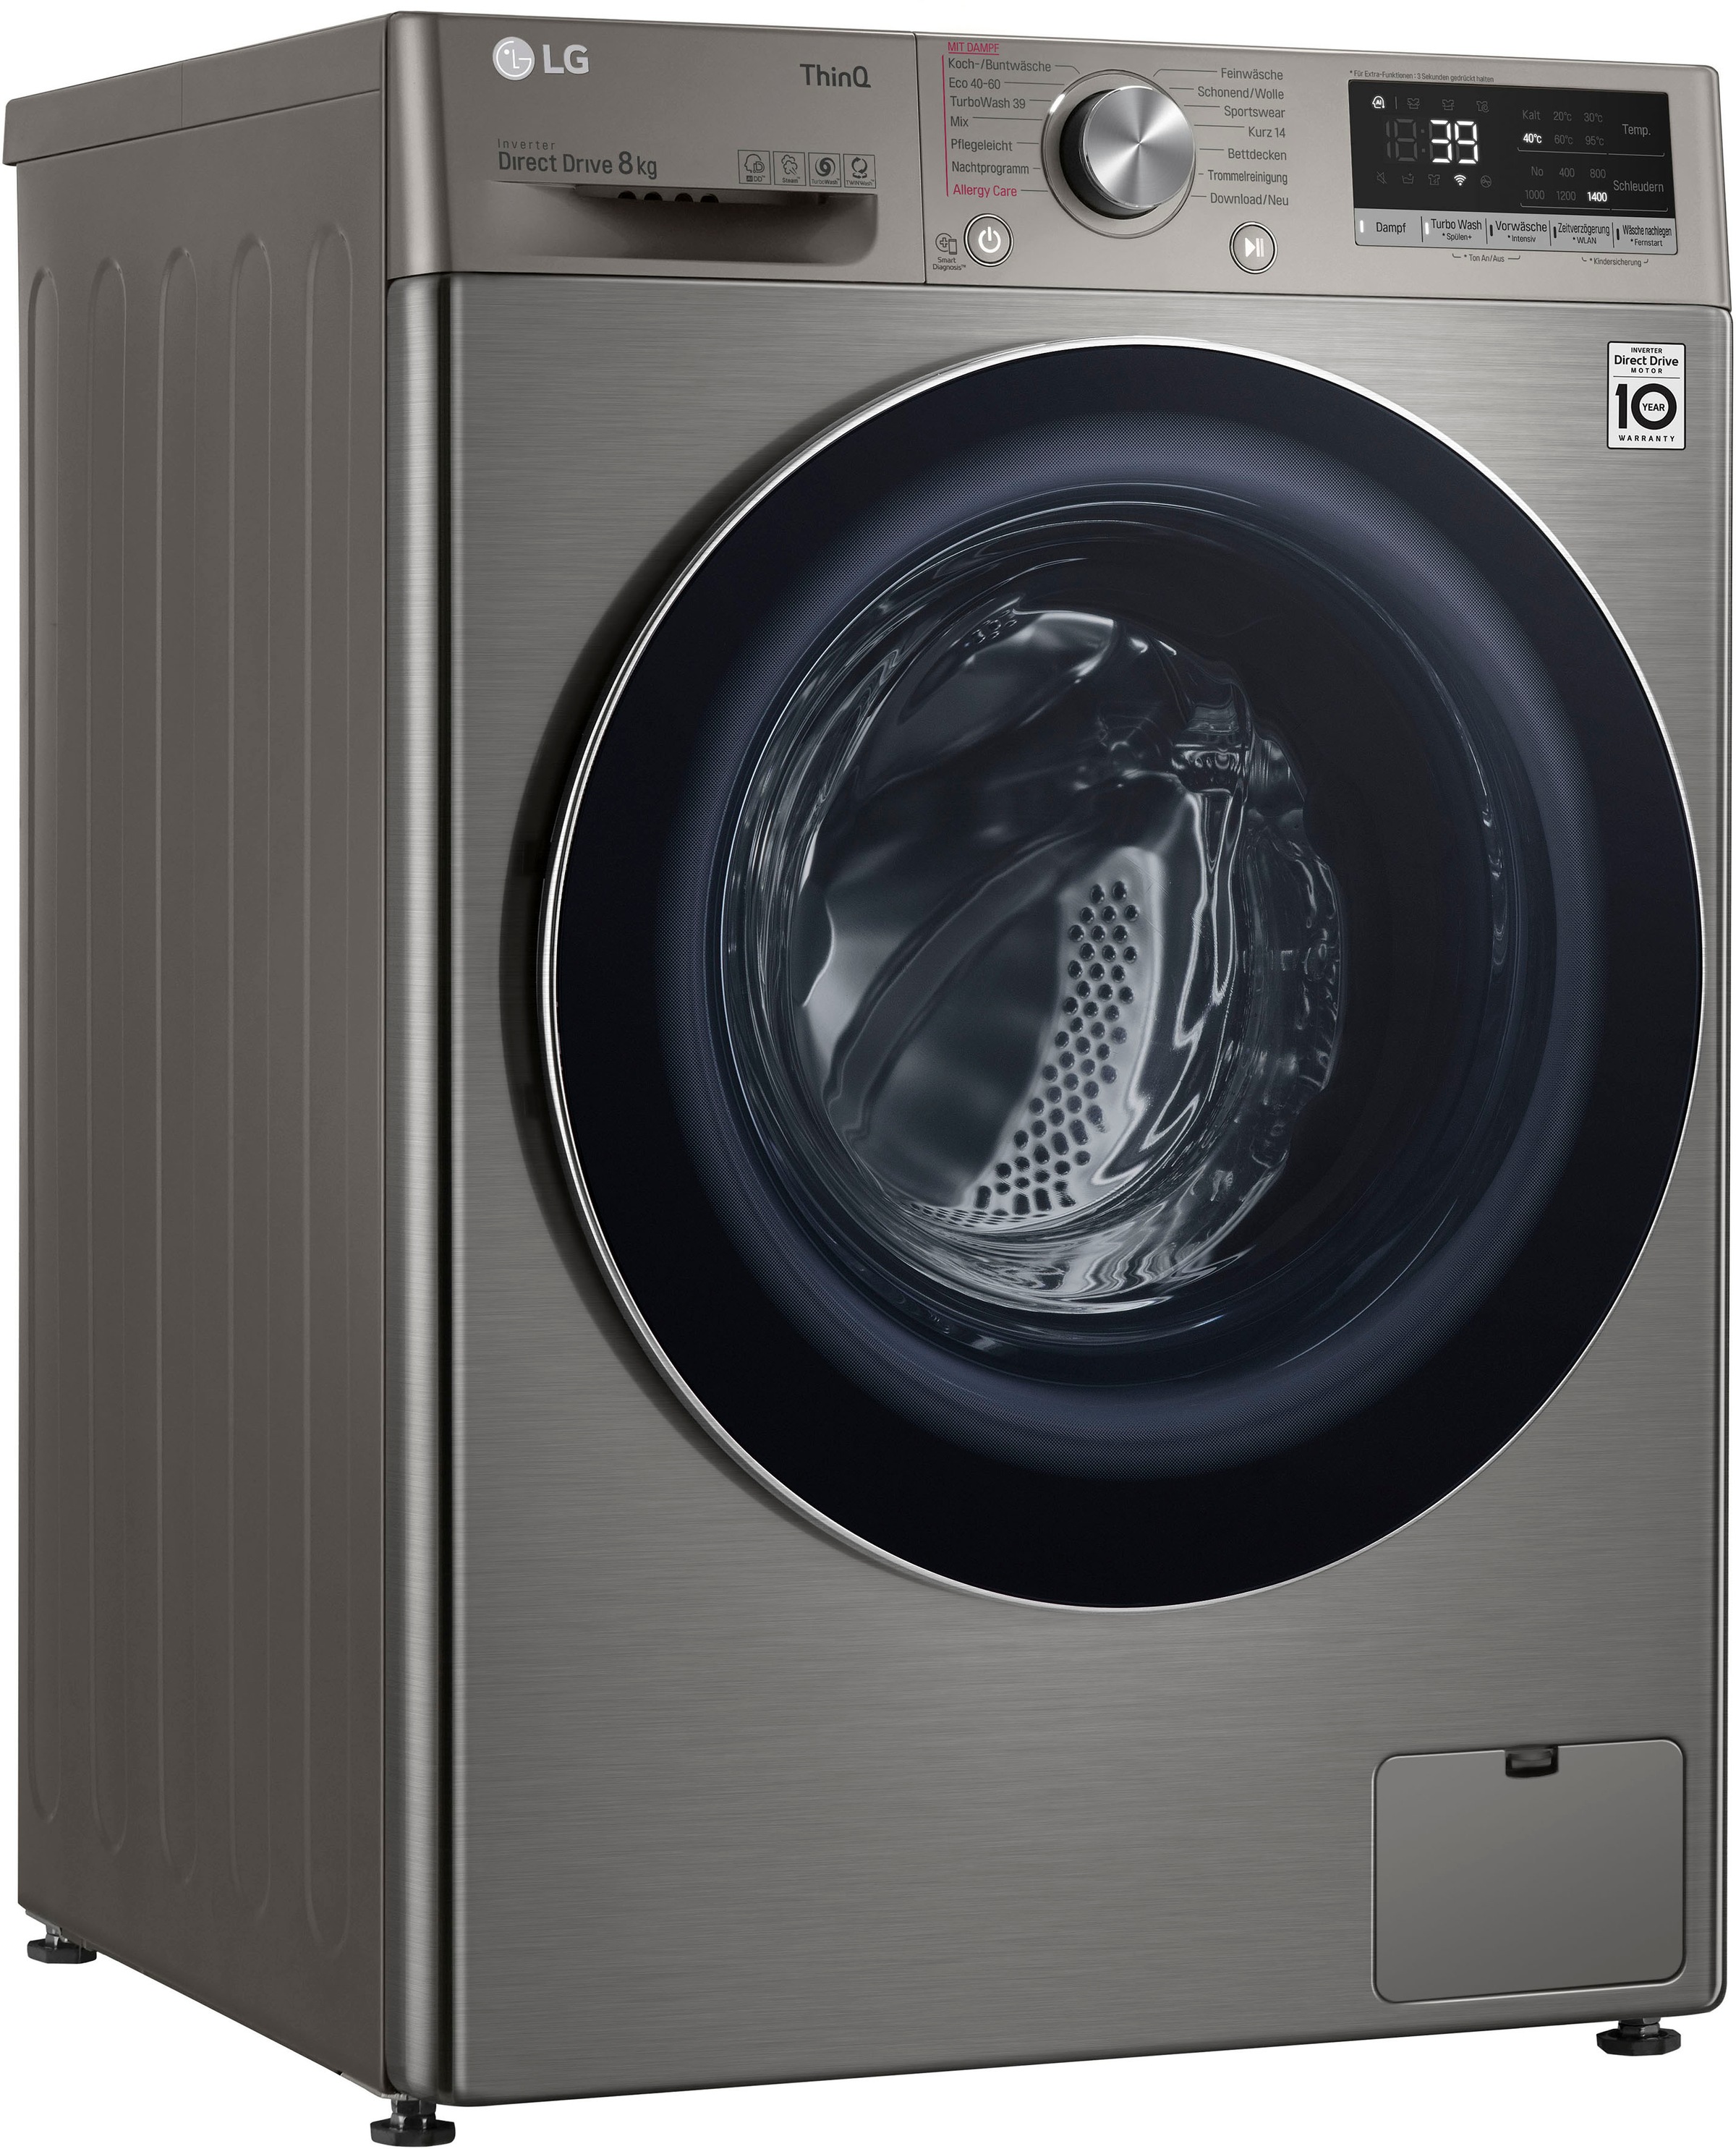 Minuten XXL 8 TurboWash® Garantie Waschmaschine, - Jahren LG U/min, 39 kg, in V708P2PA, 3 1400 nur mit Waschen